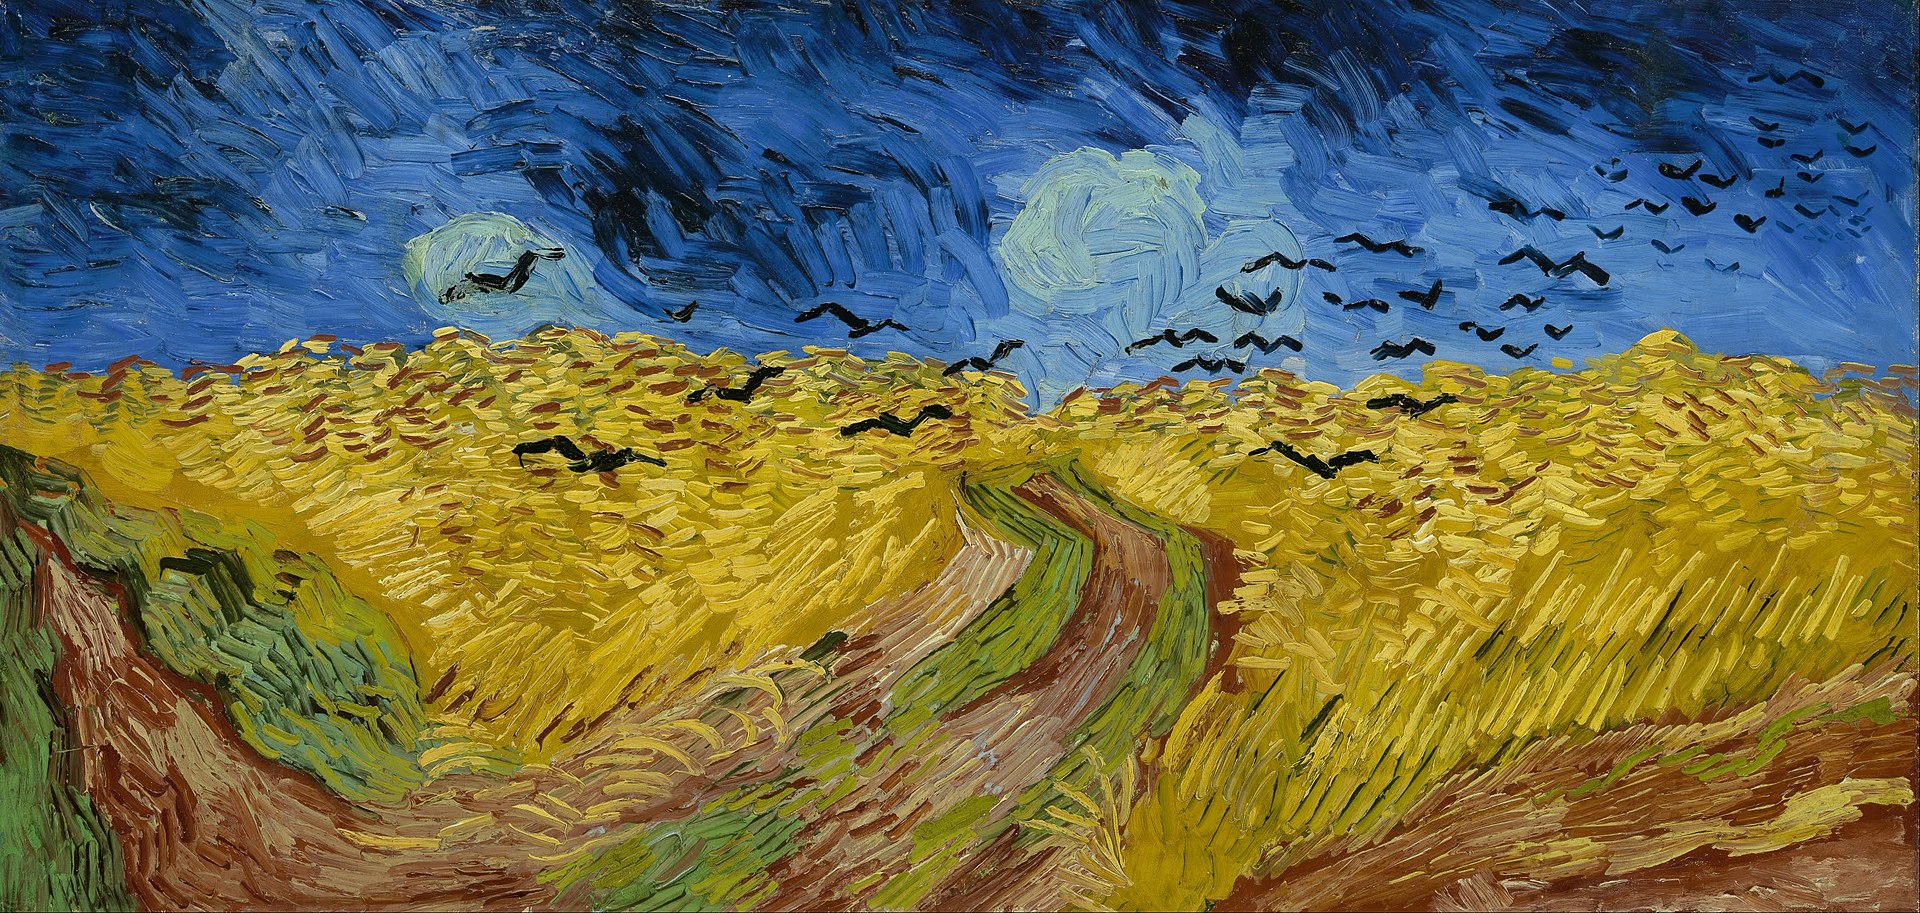 Source : Wikipédia - Vincent van Gogh (1853-1890) - Le champ de blé aux corbeaux - Juillet 1890 - Musée van Gogh, Amsterdam